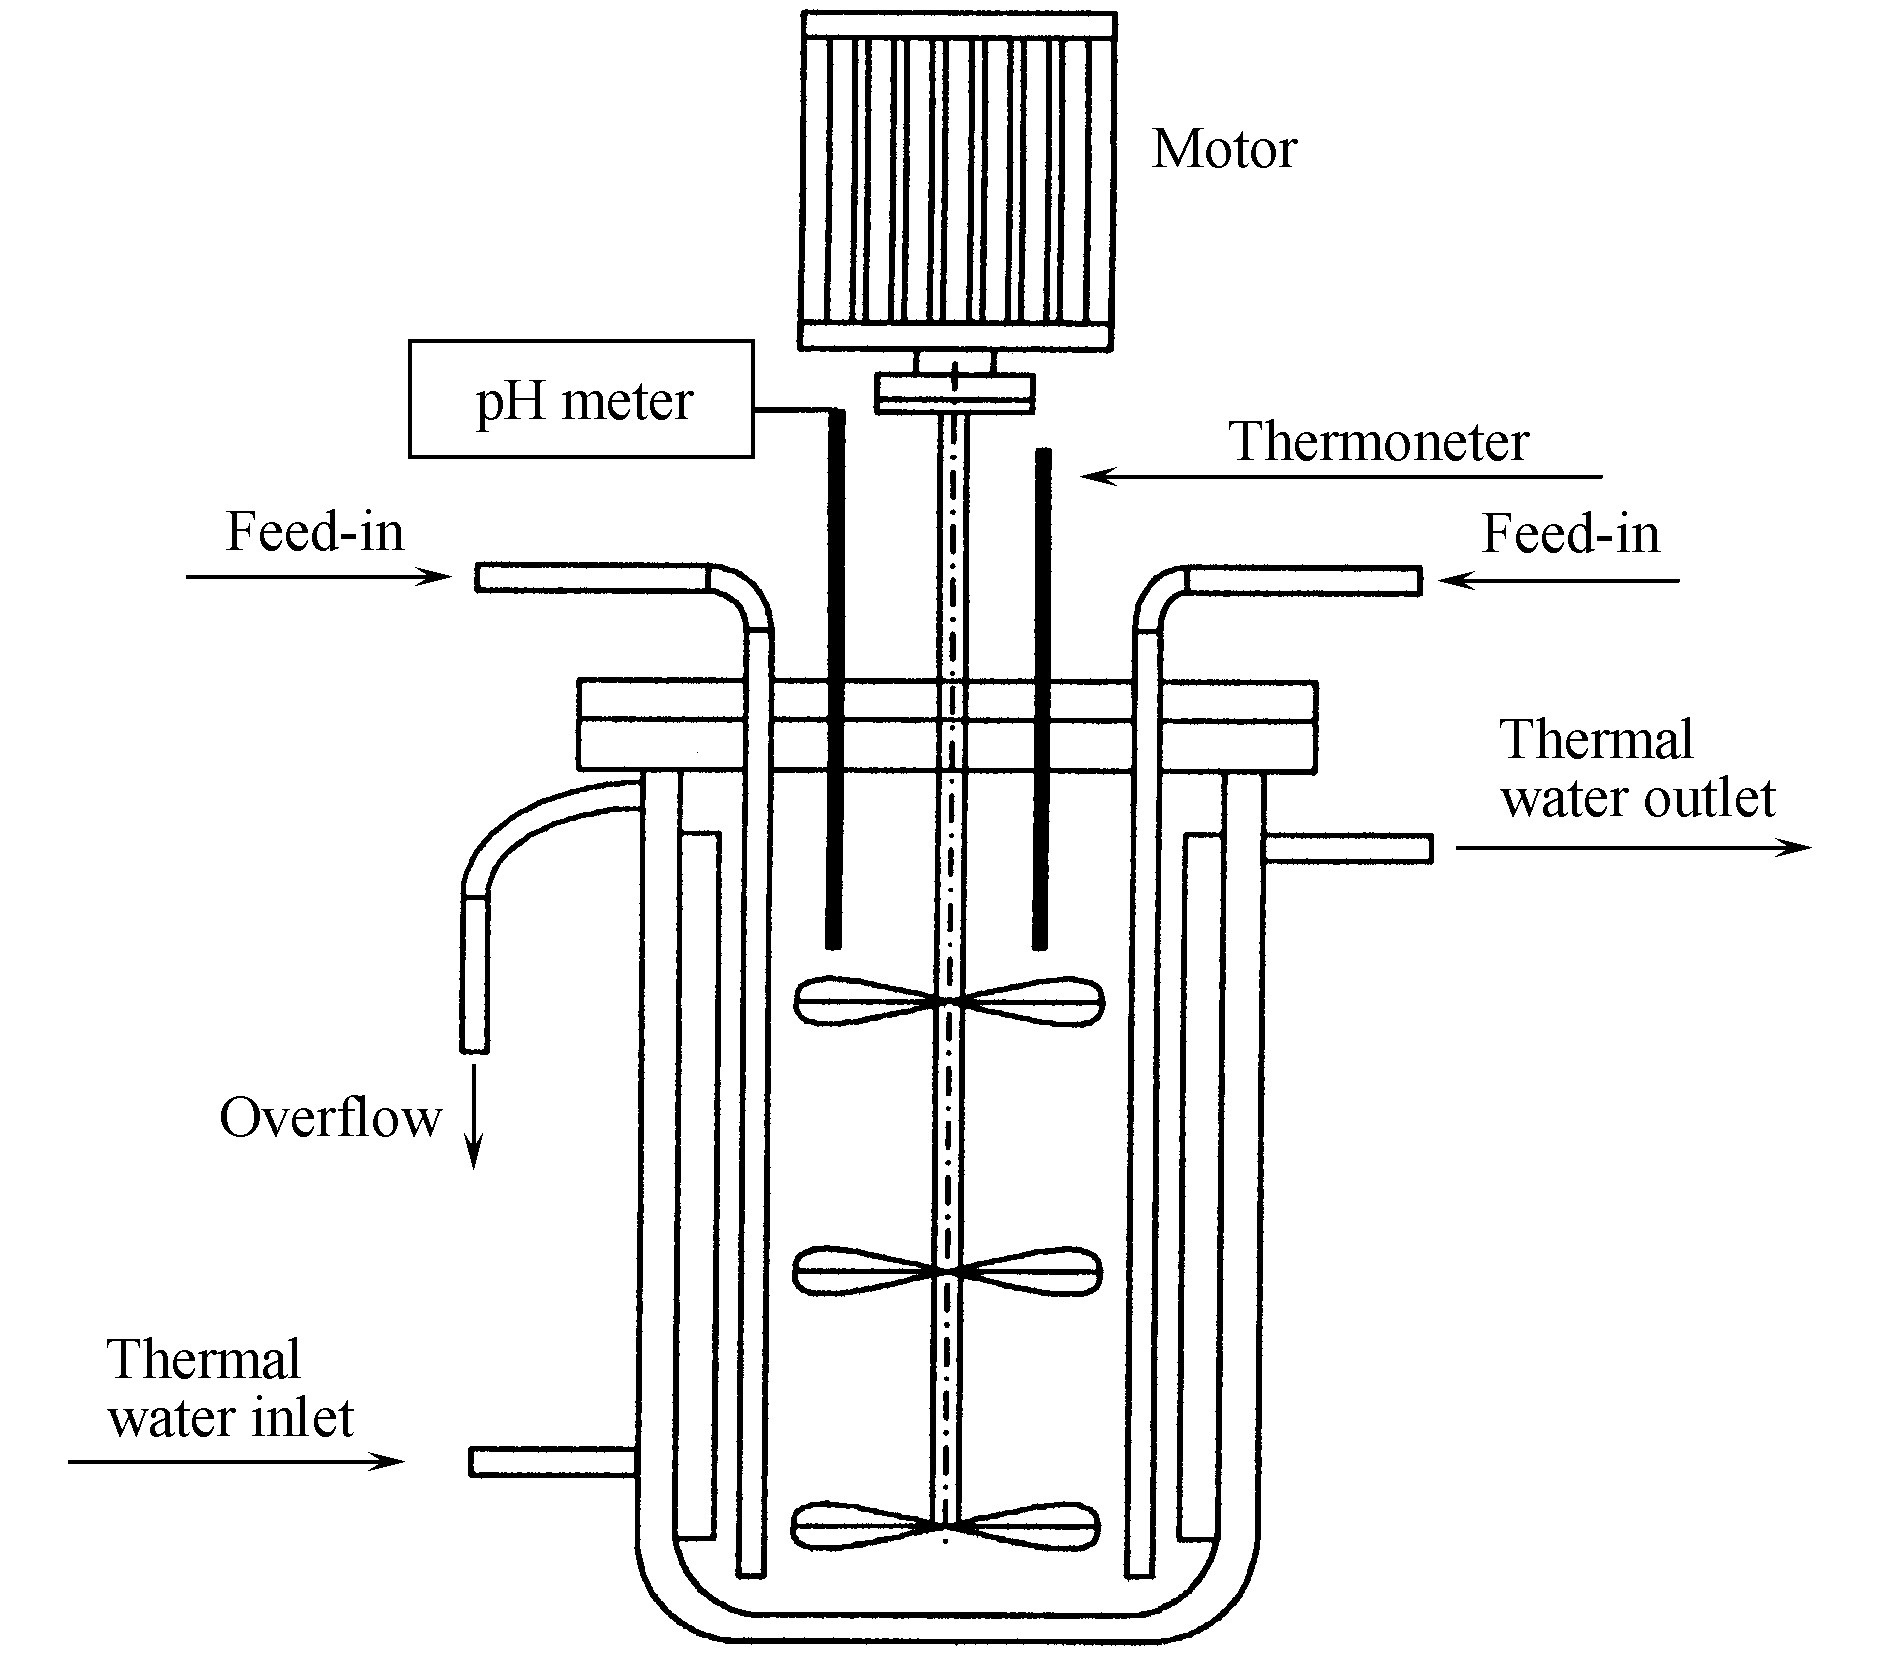 图4 控制结晶反应器示意图
Fig.4 Reactor for controlled crystallization process